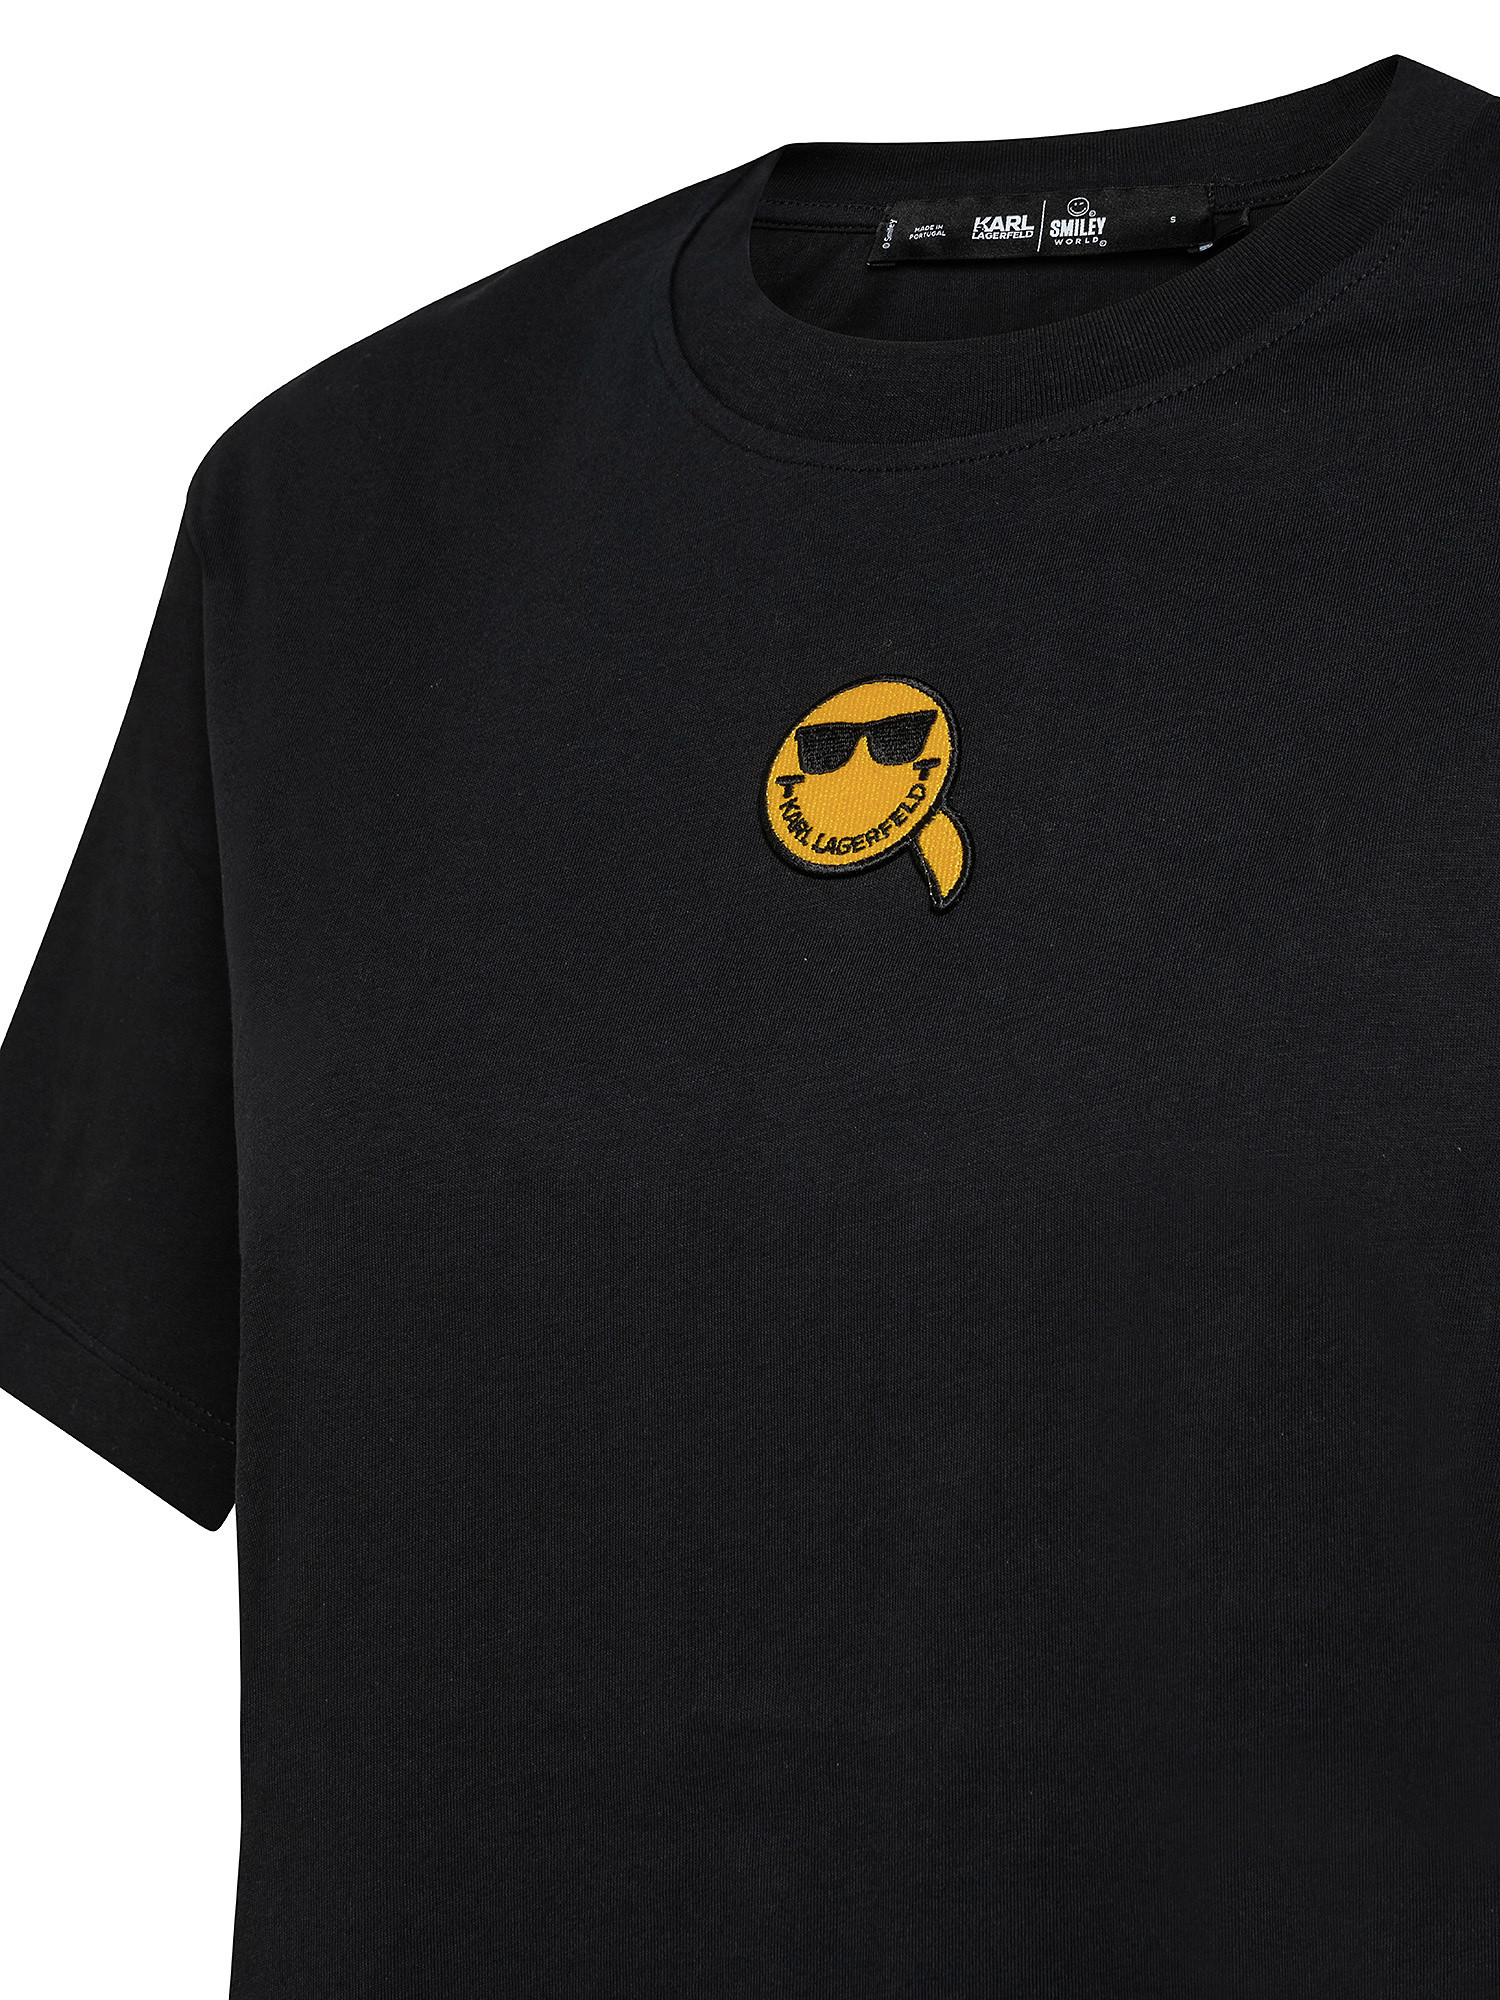 T-shirt unisex con logo mini emoticon, Nero, large image number 2